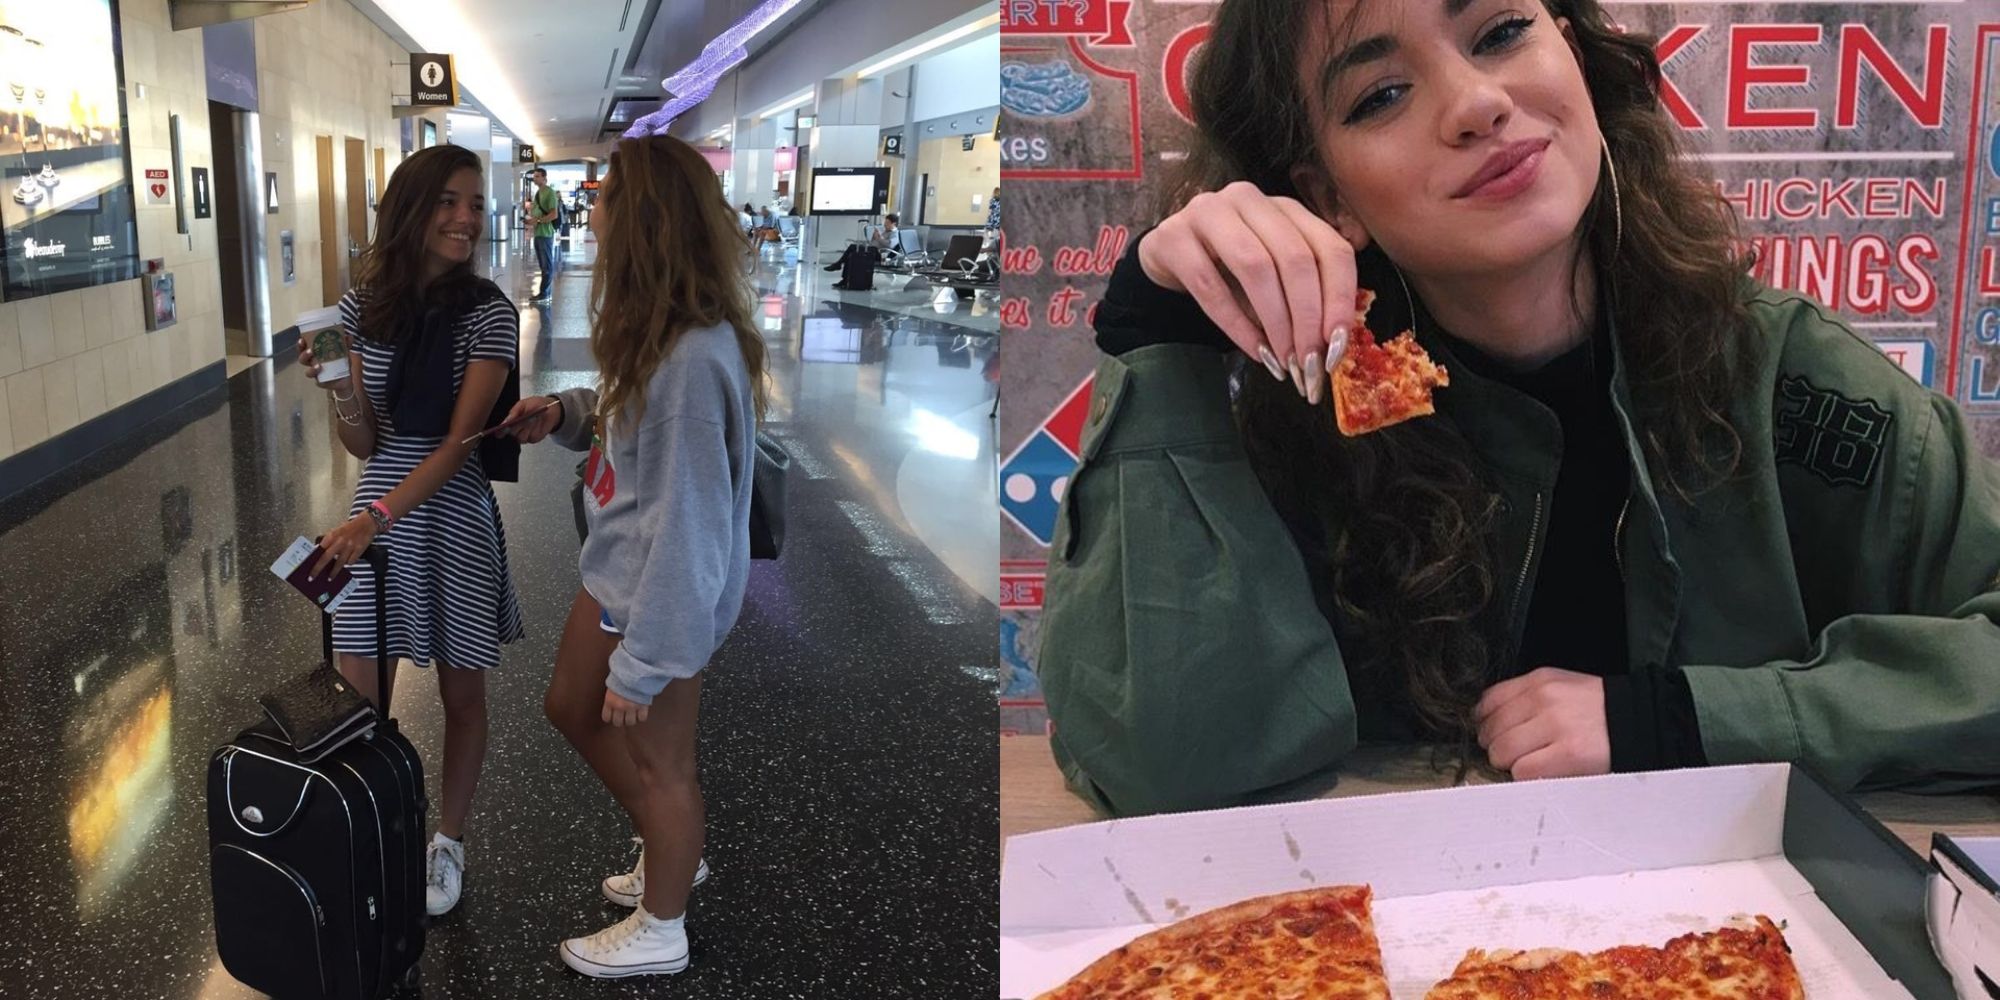 garotas em pé no aeroporto e garota comendo pizza